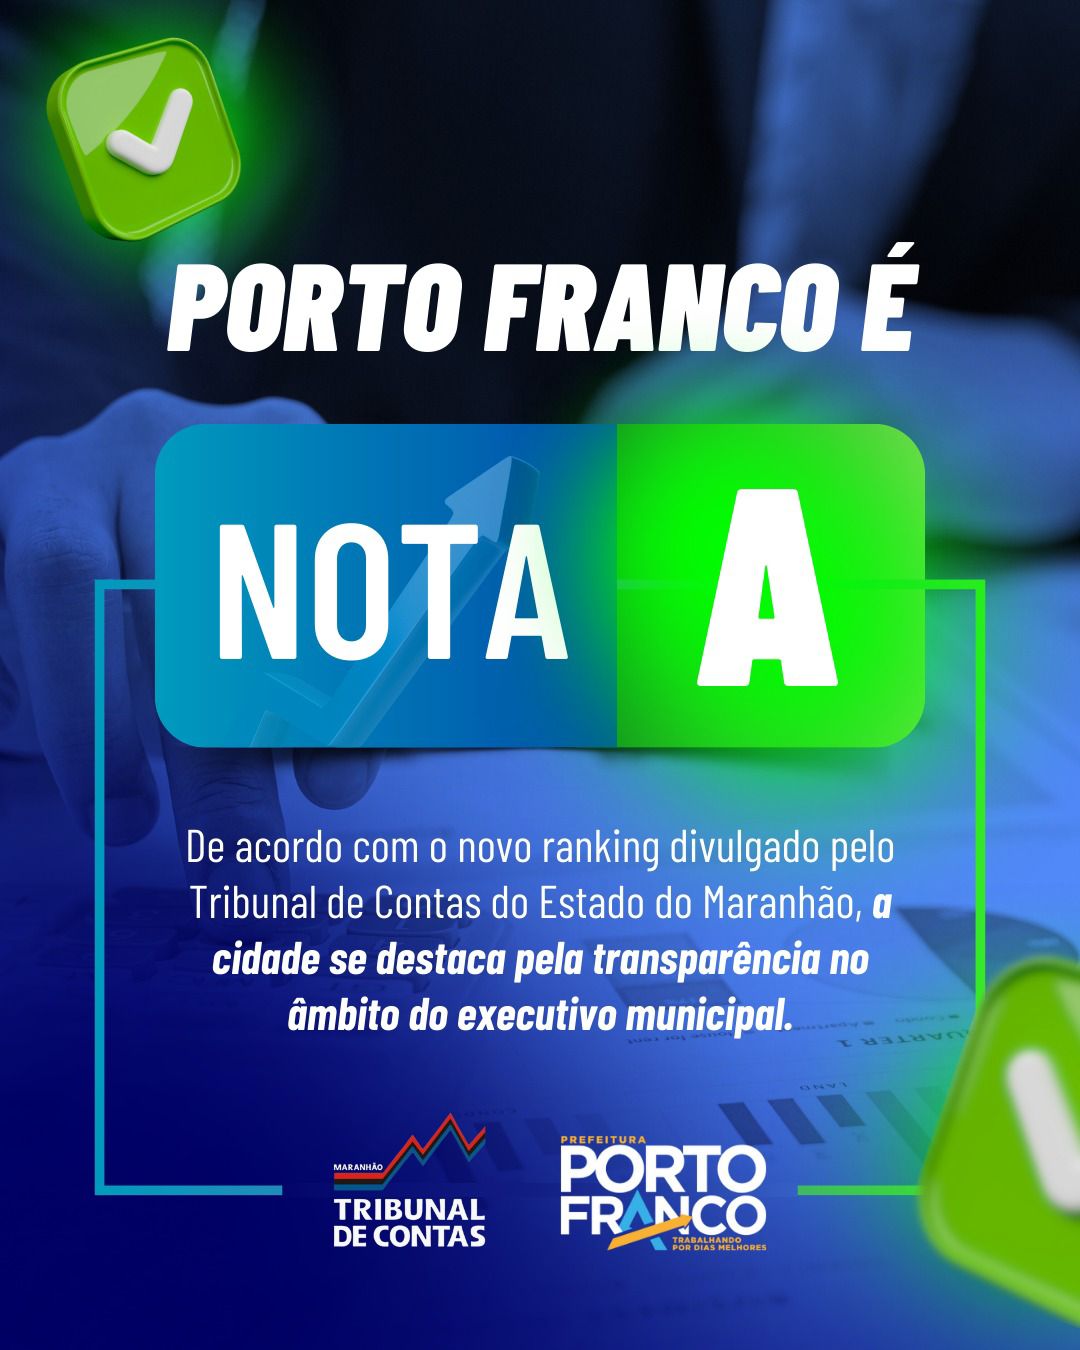 Porto Franco é nota A em transparência municipal, segundo TCE